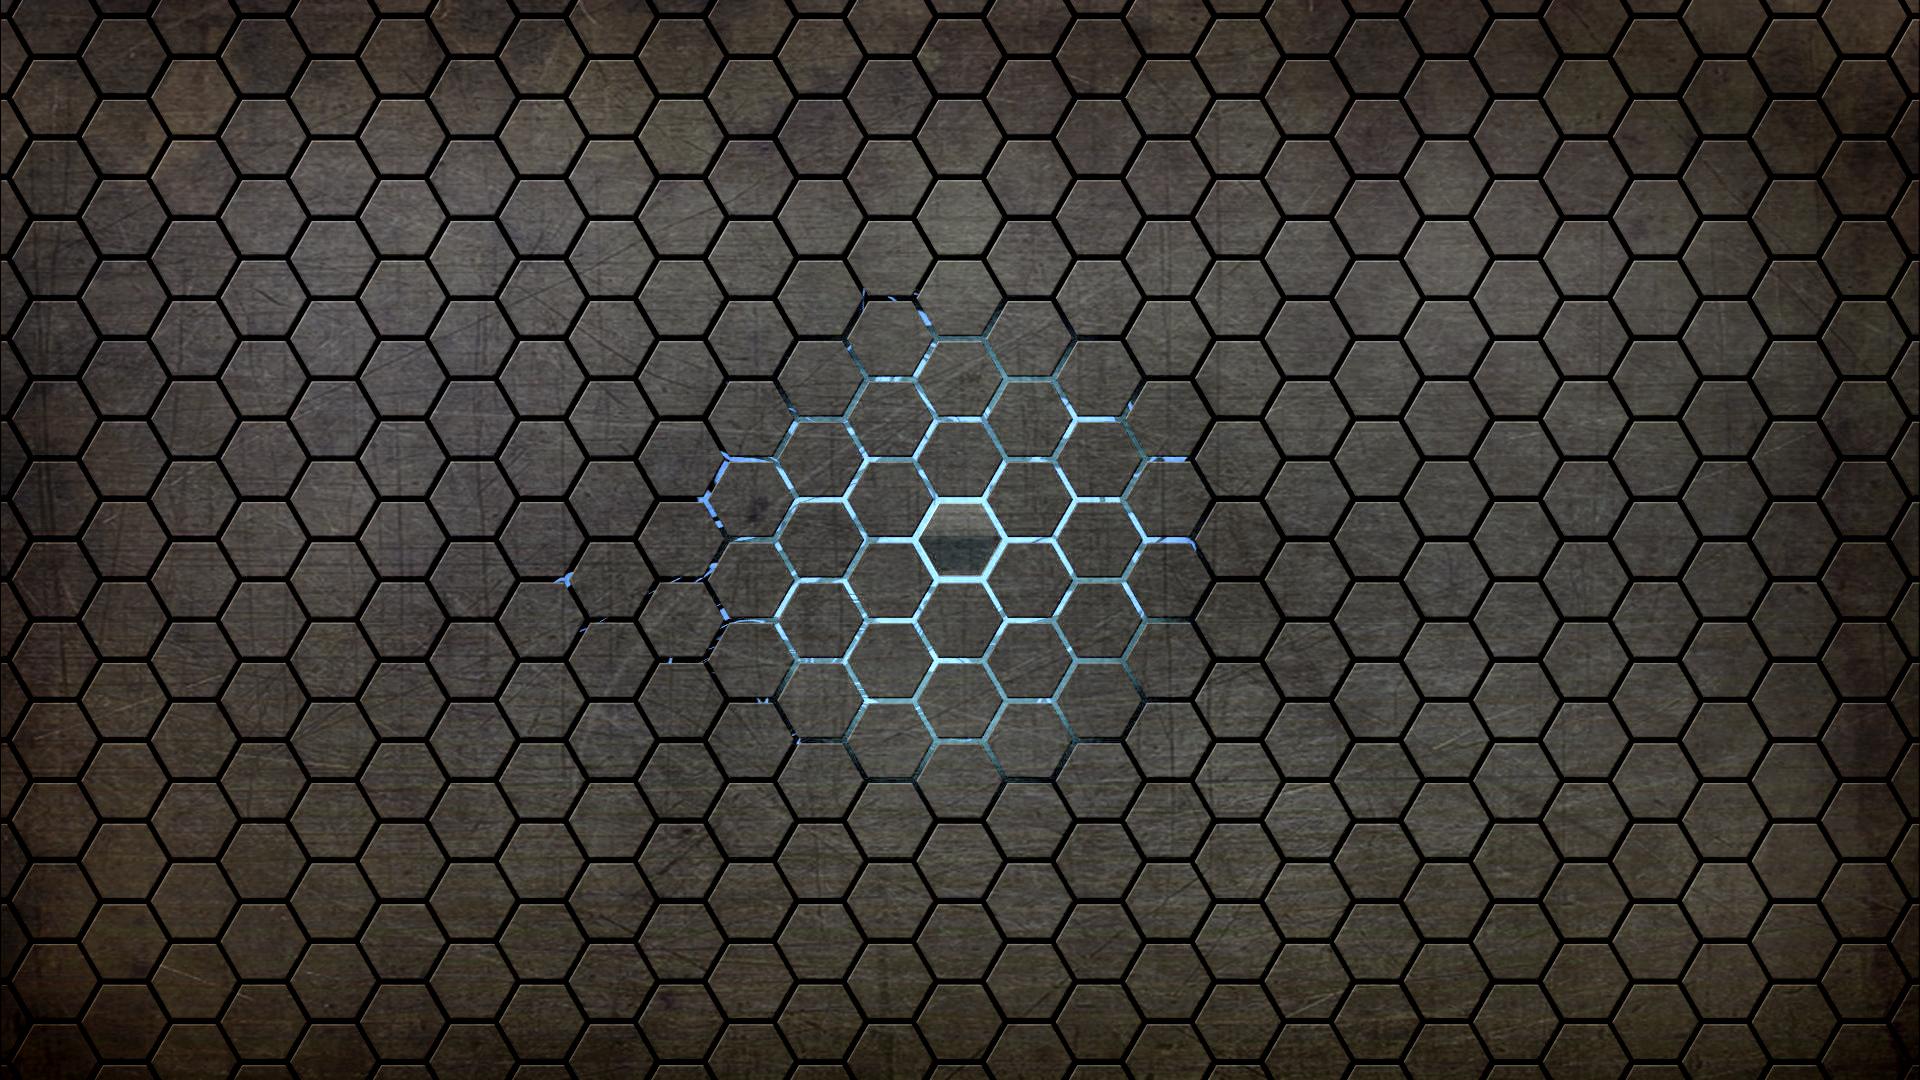 hexagon, abstract